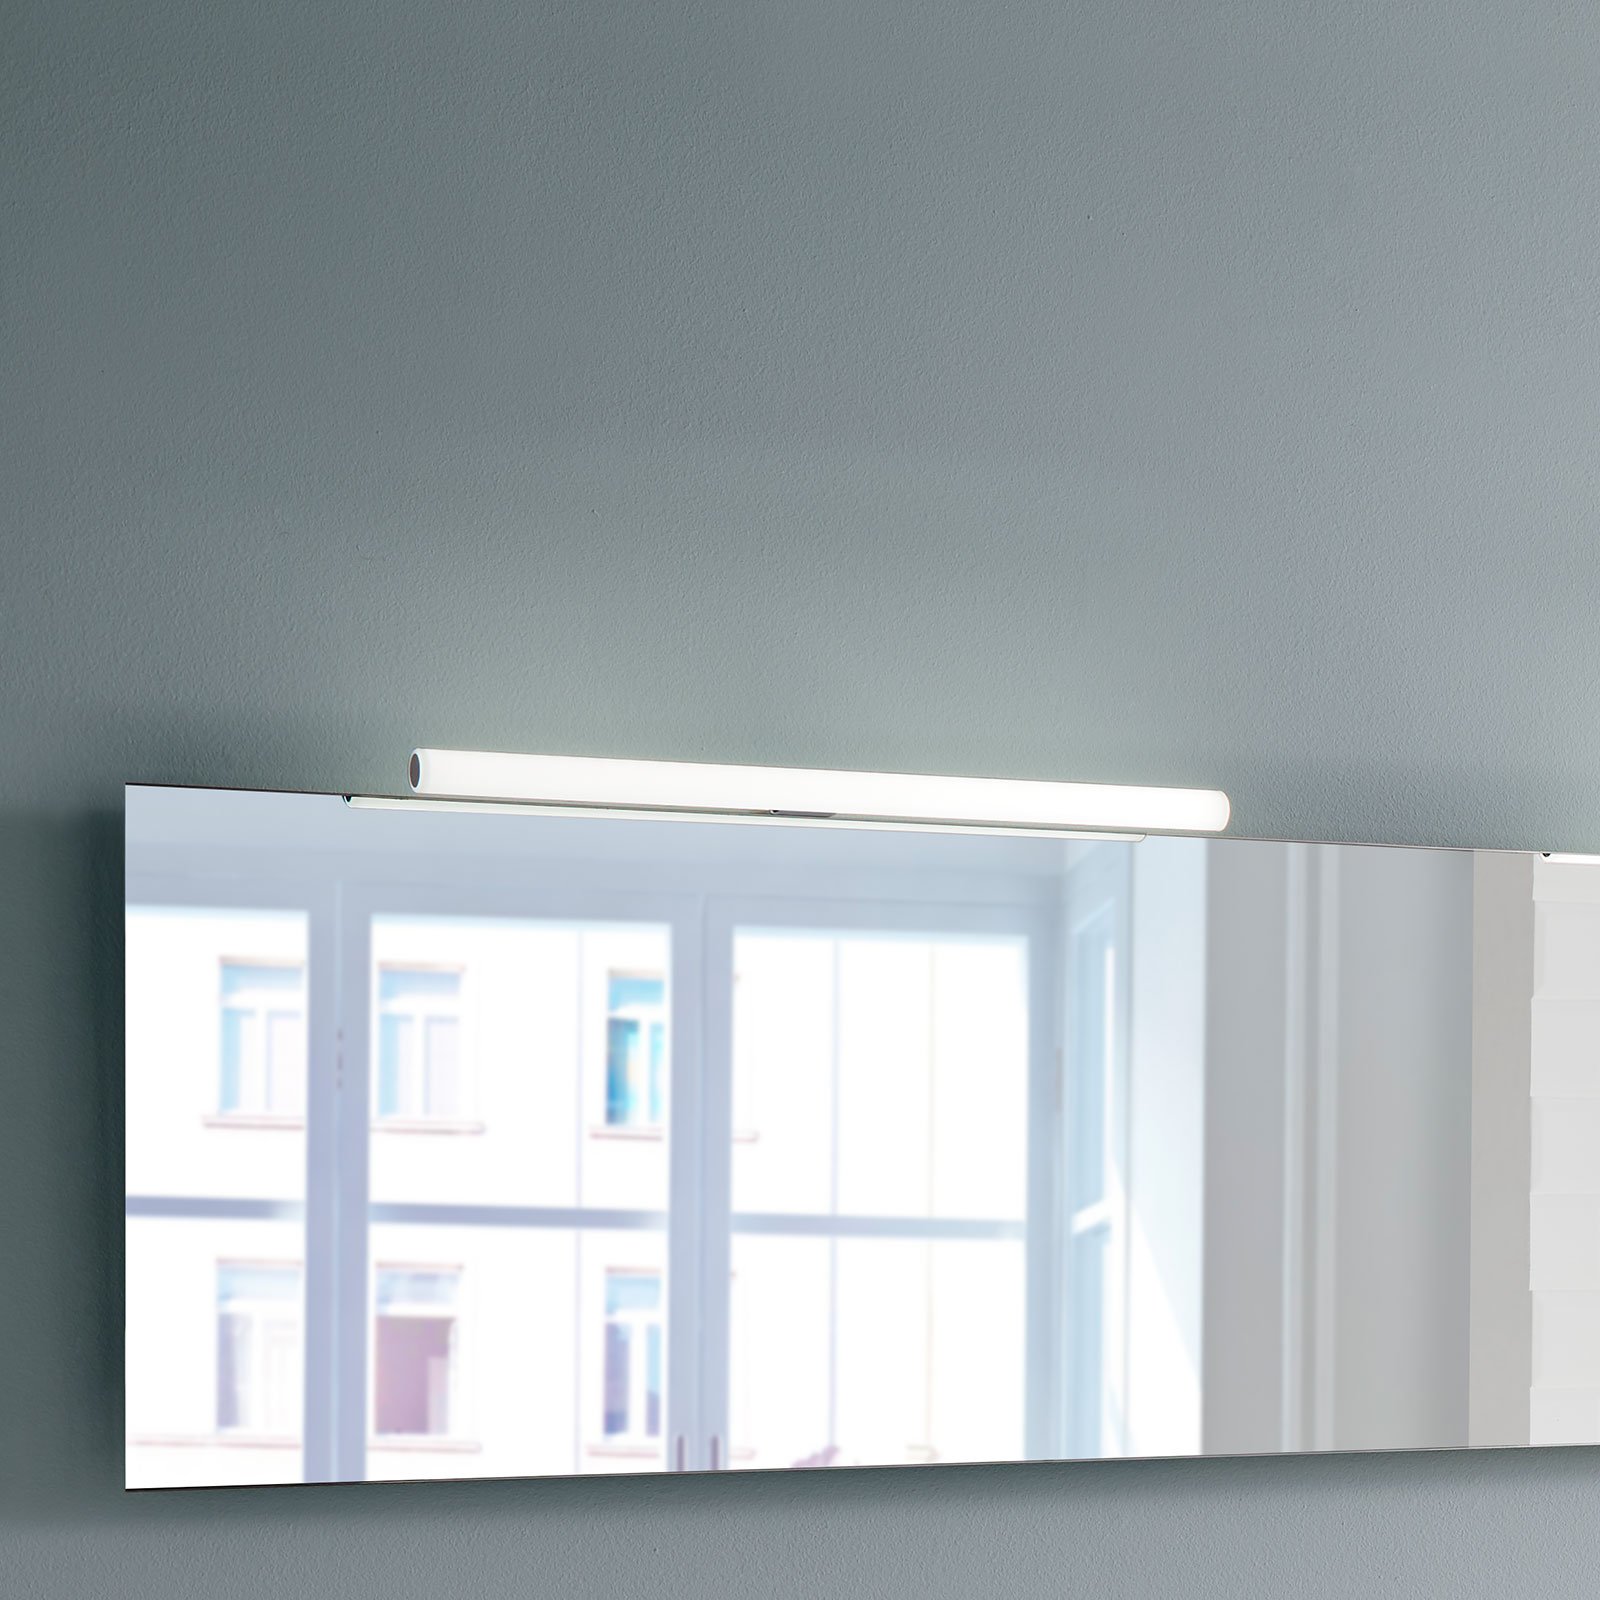 LED-Spiegelleuchte Irene 2, Breite 80 cm